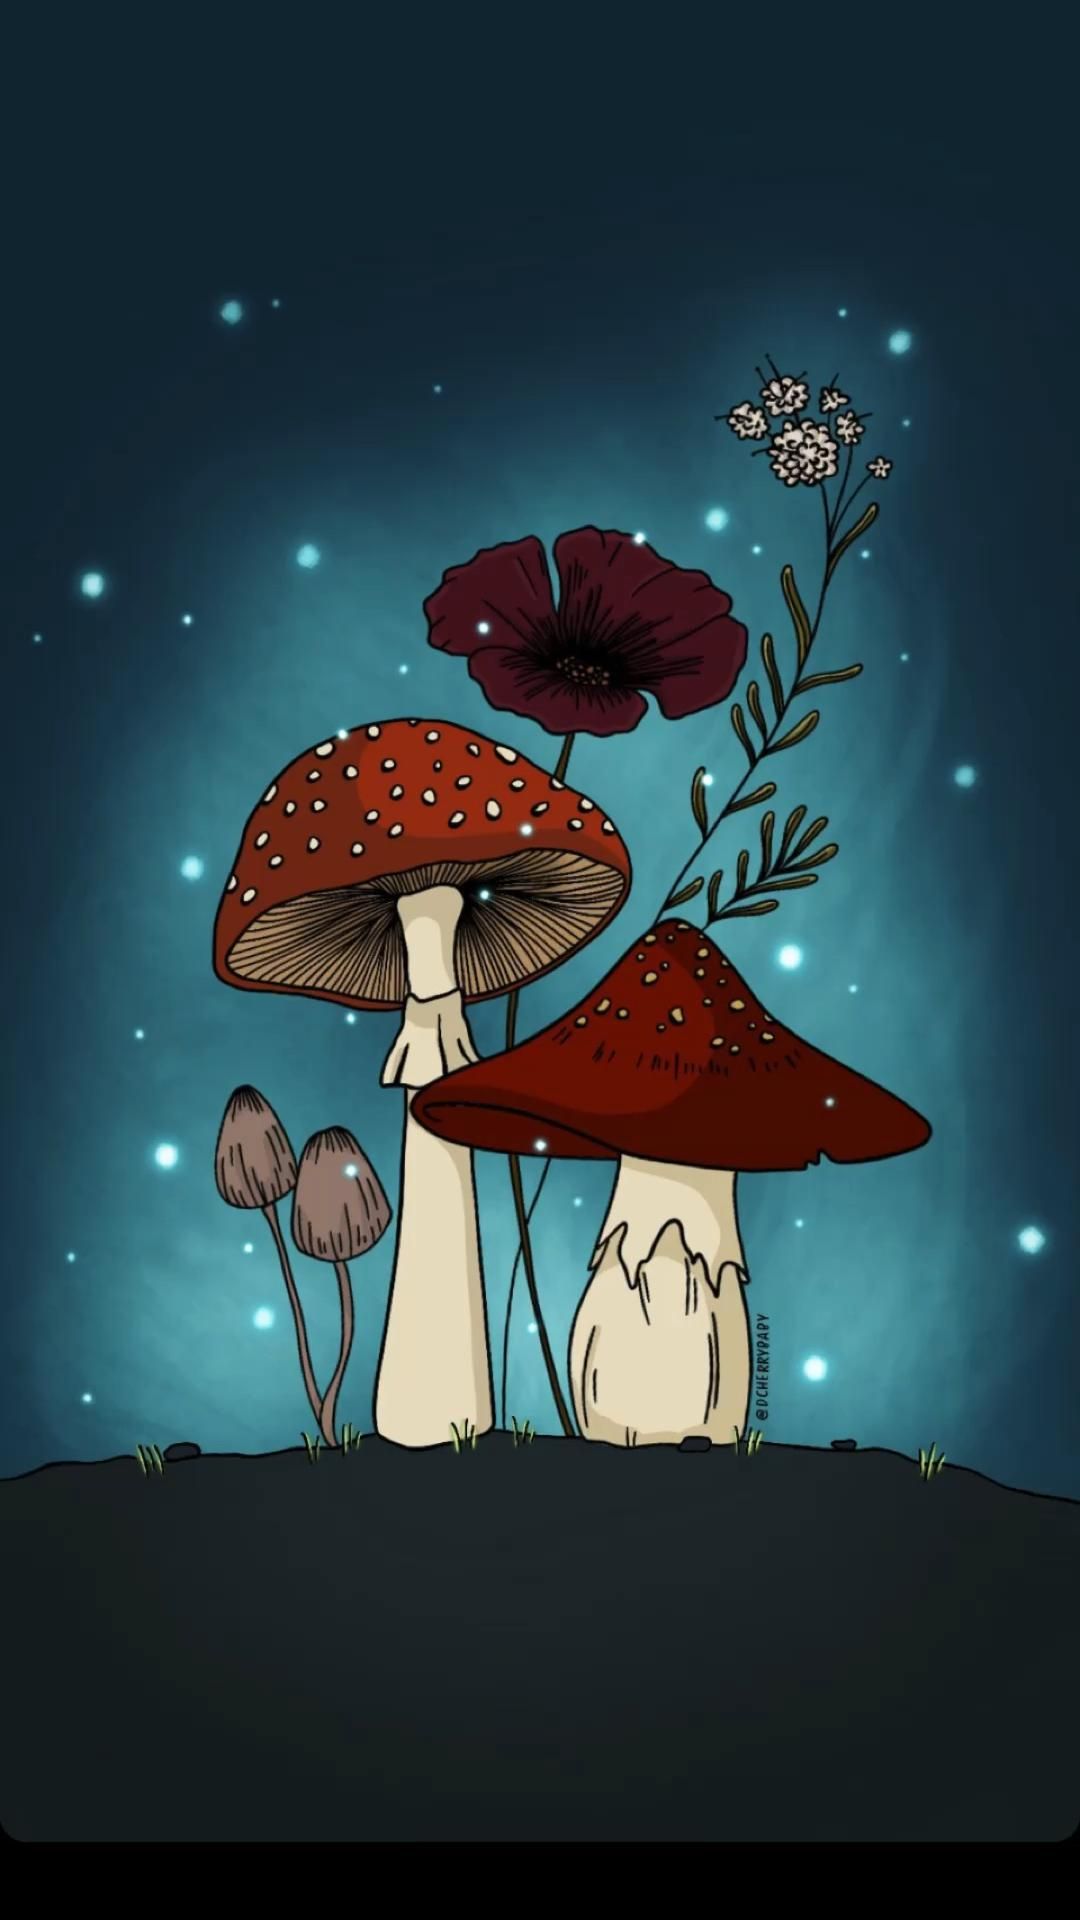 Nấm (Mushrooms): Hãy cùng khám phá vẻ đẹp đầy bình yên của những chiếc nấm trong ảnh. Với những màu sắc và hình dáng độc đáo, chúng ta sẽ mê mẩn và yêu thích chúng ngay từ cái nhìn đầu tiên.